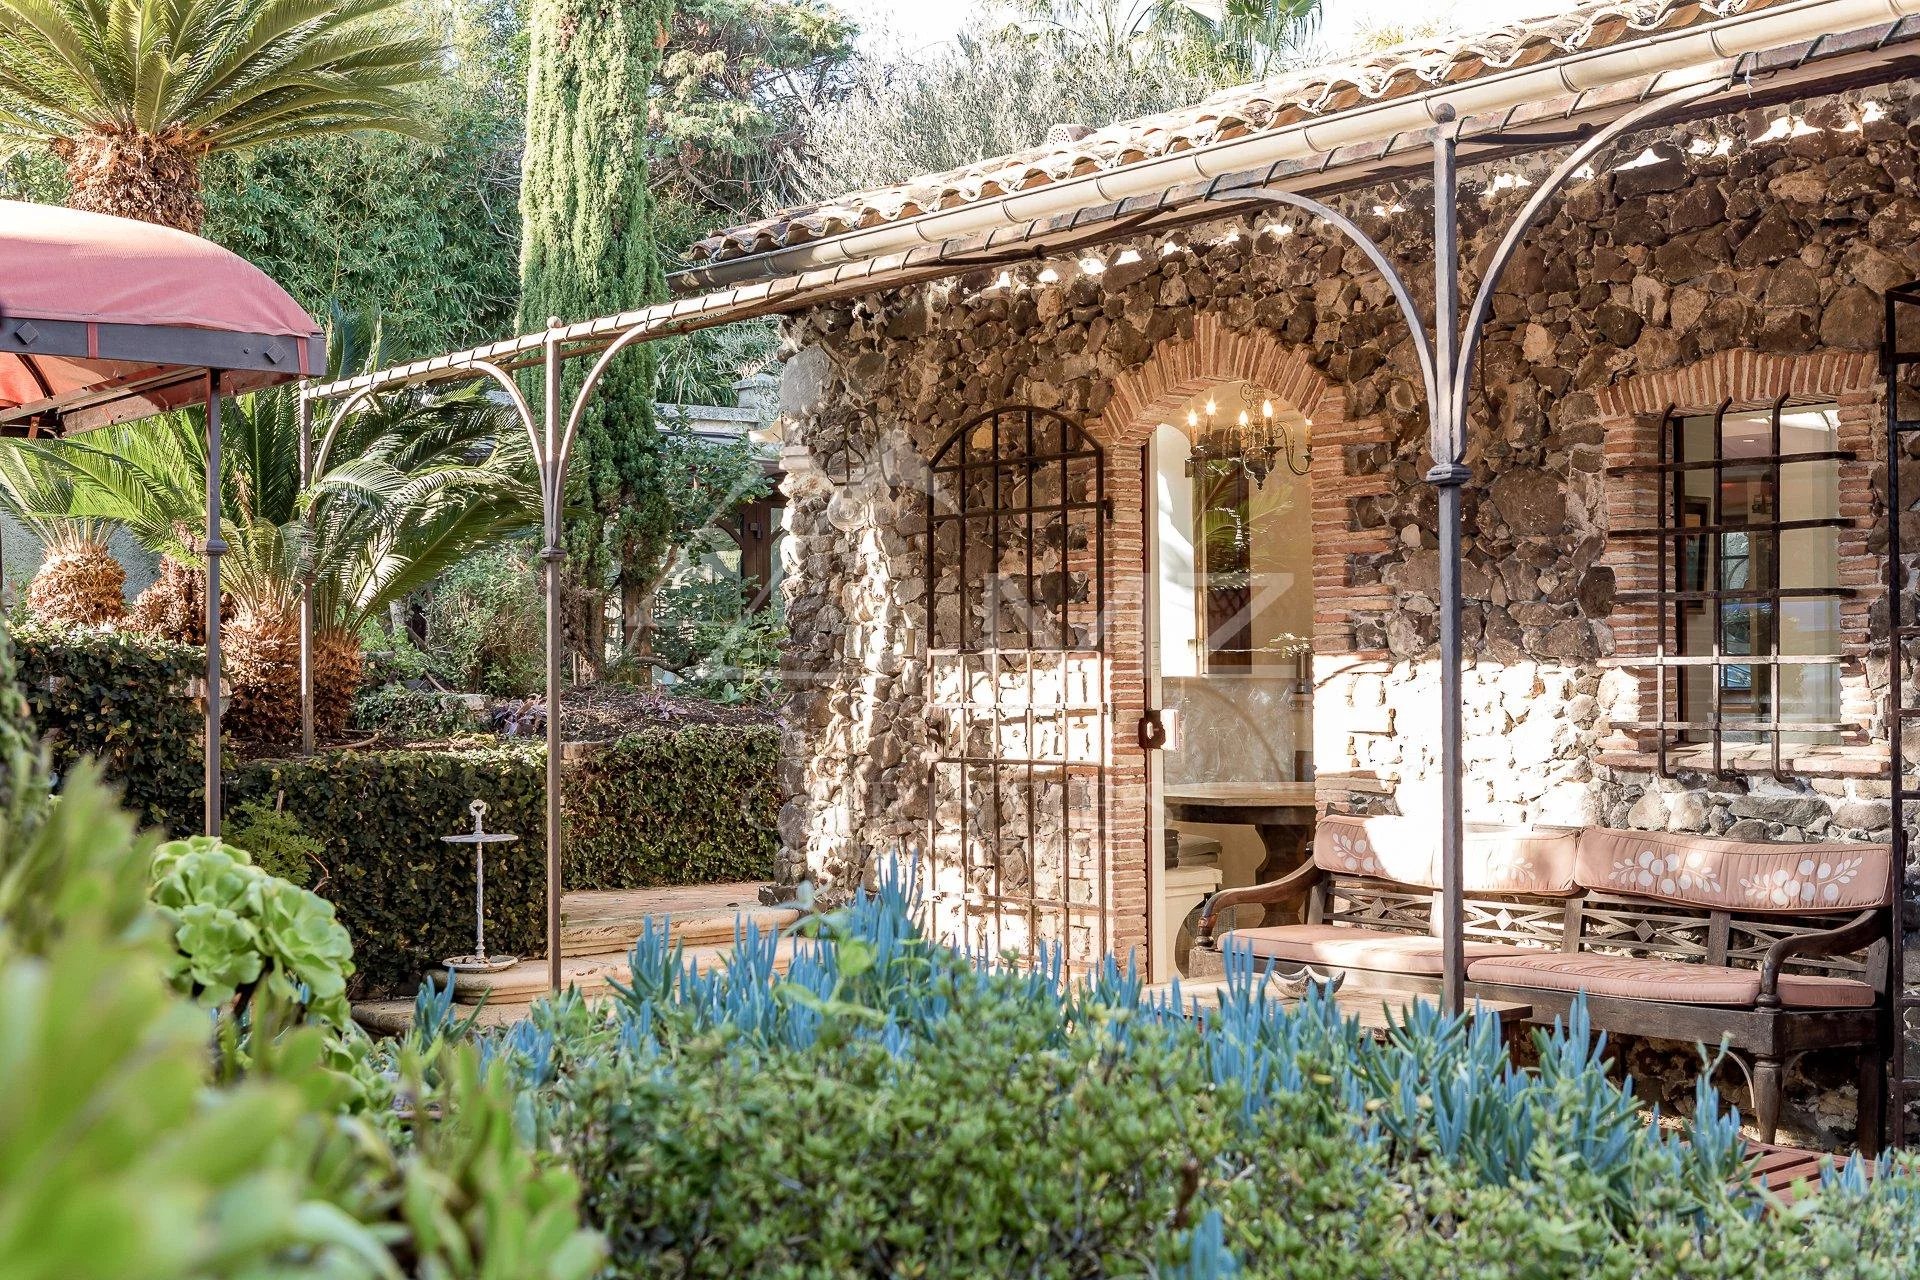 Charming Provençal villa